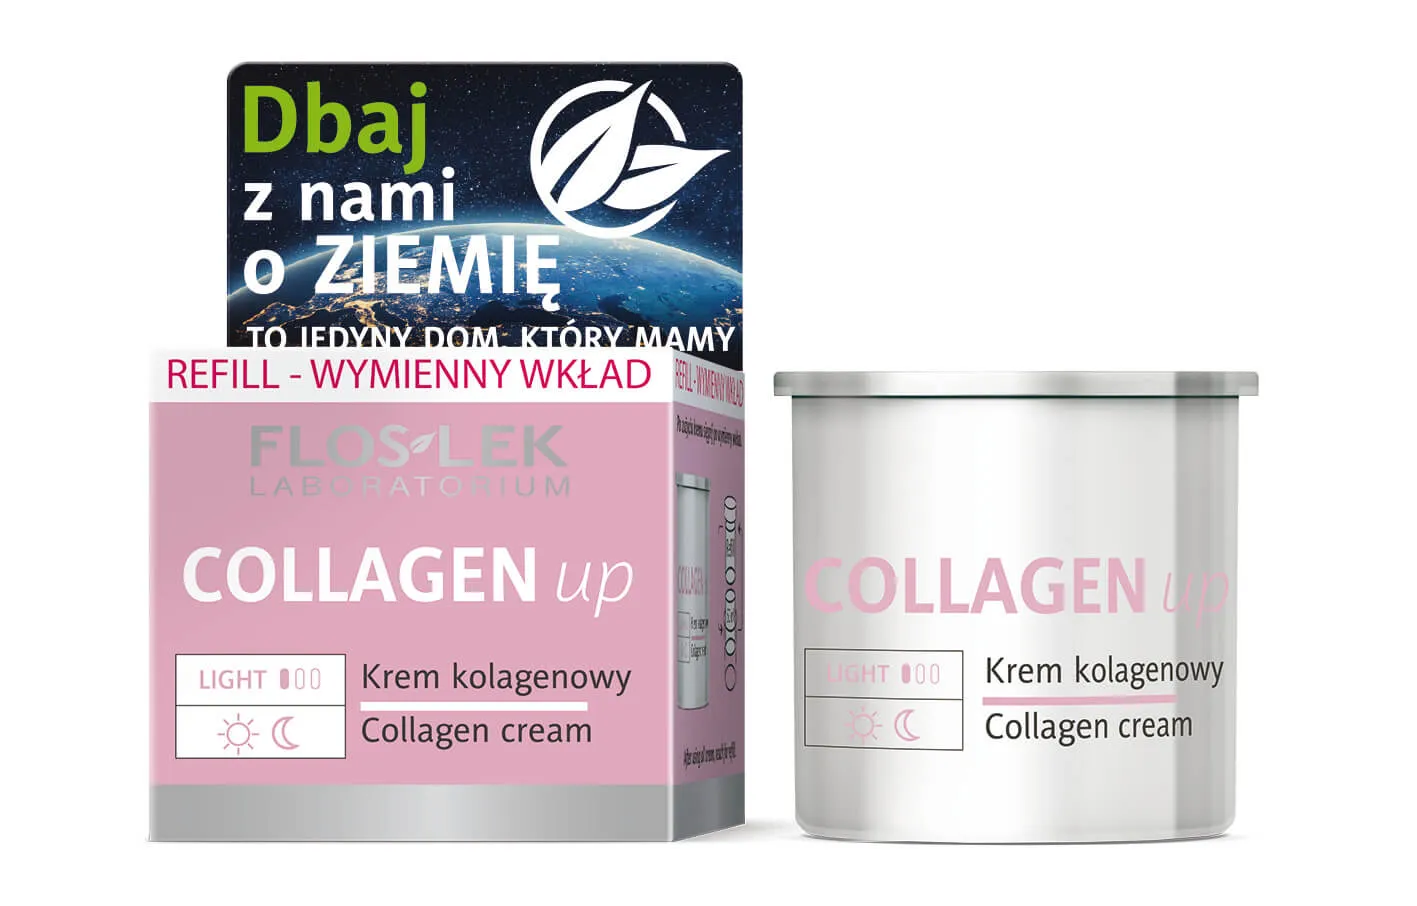 Floslek Collagen Up, krem kolagenowy, refill- wymienny wkład 50+, 50 ml